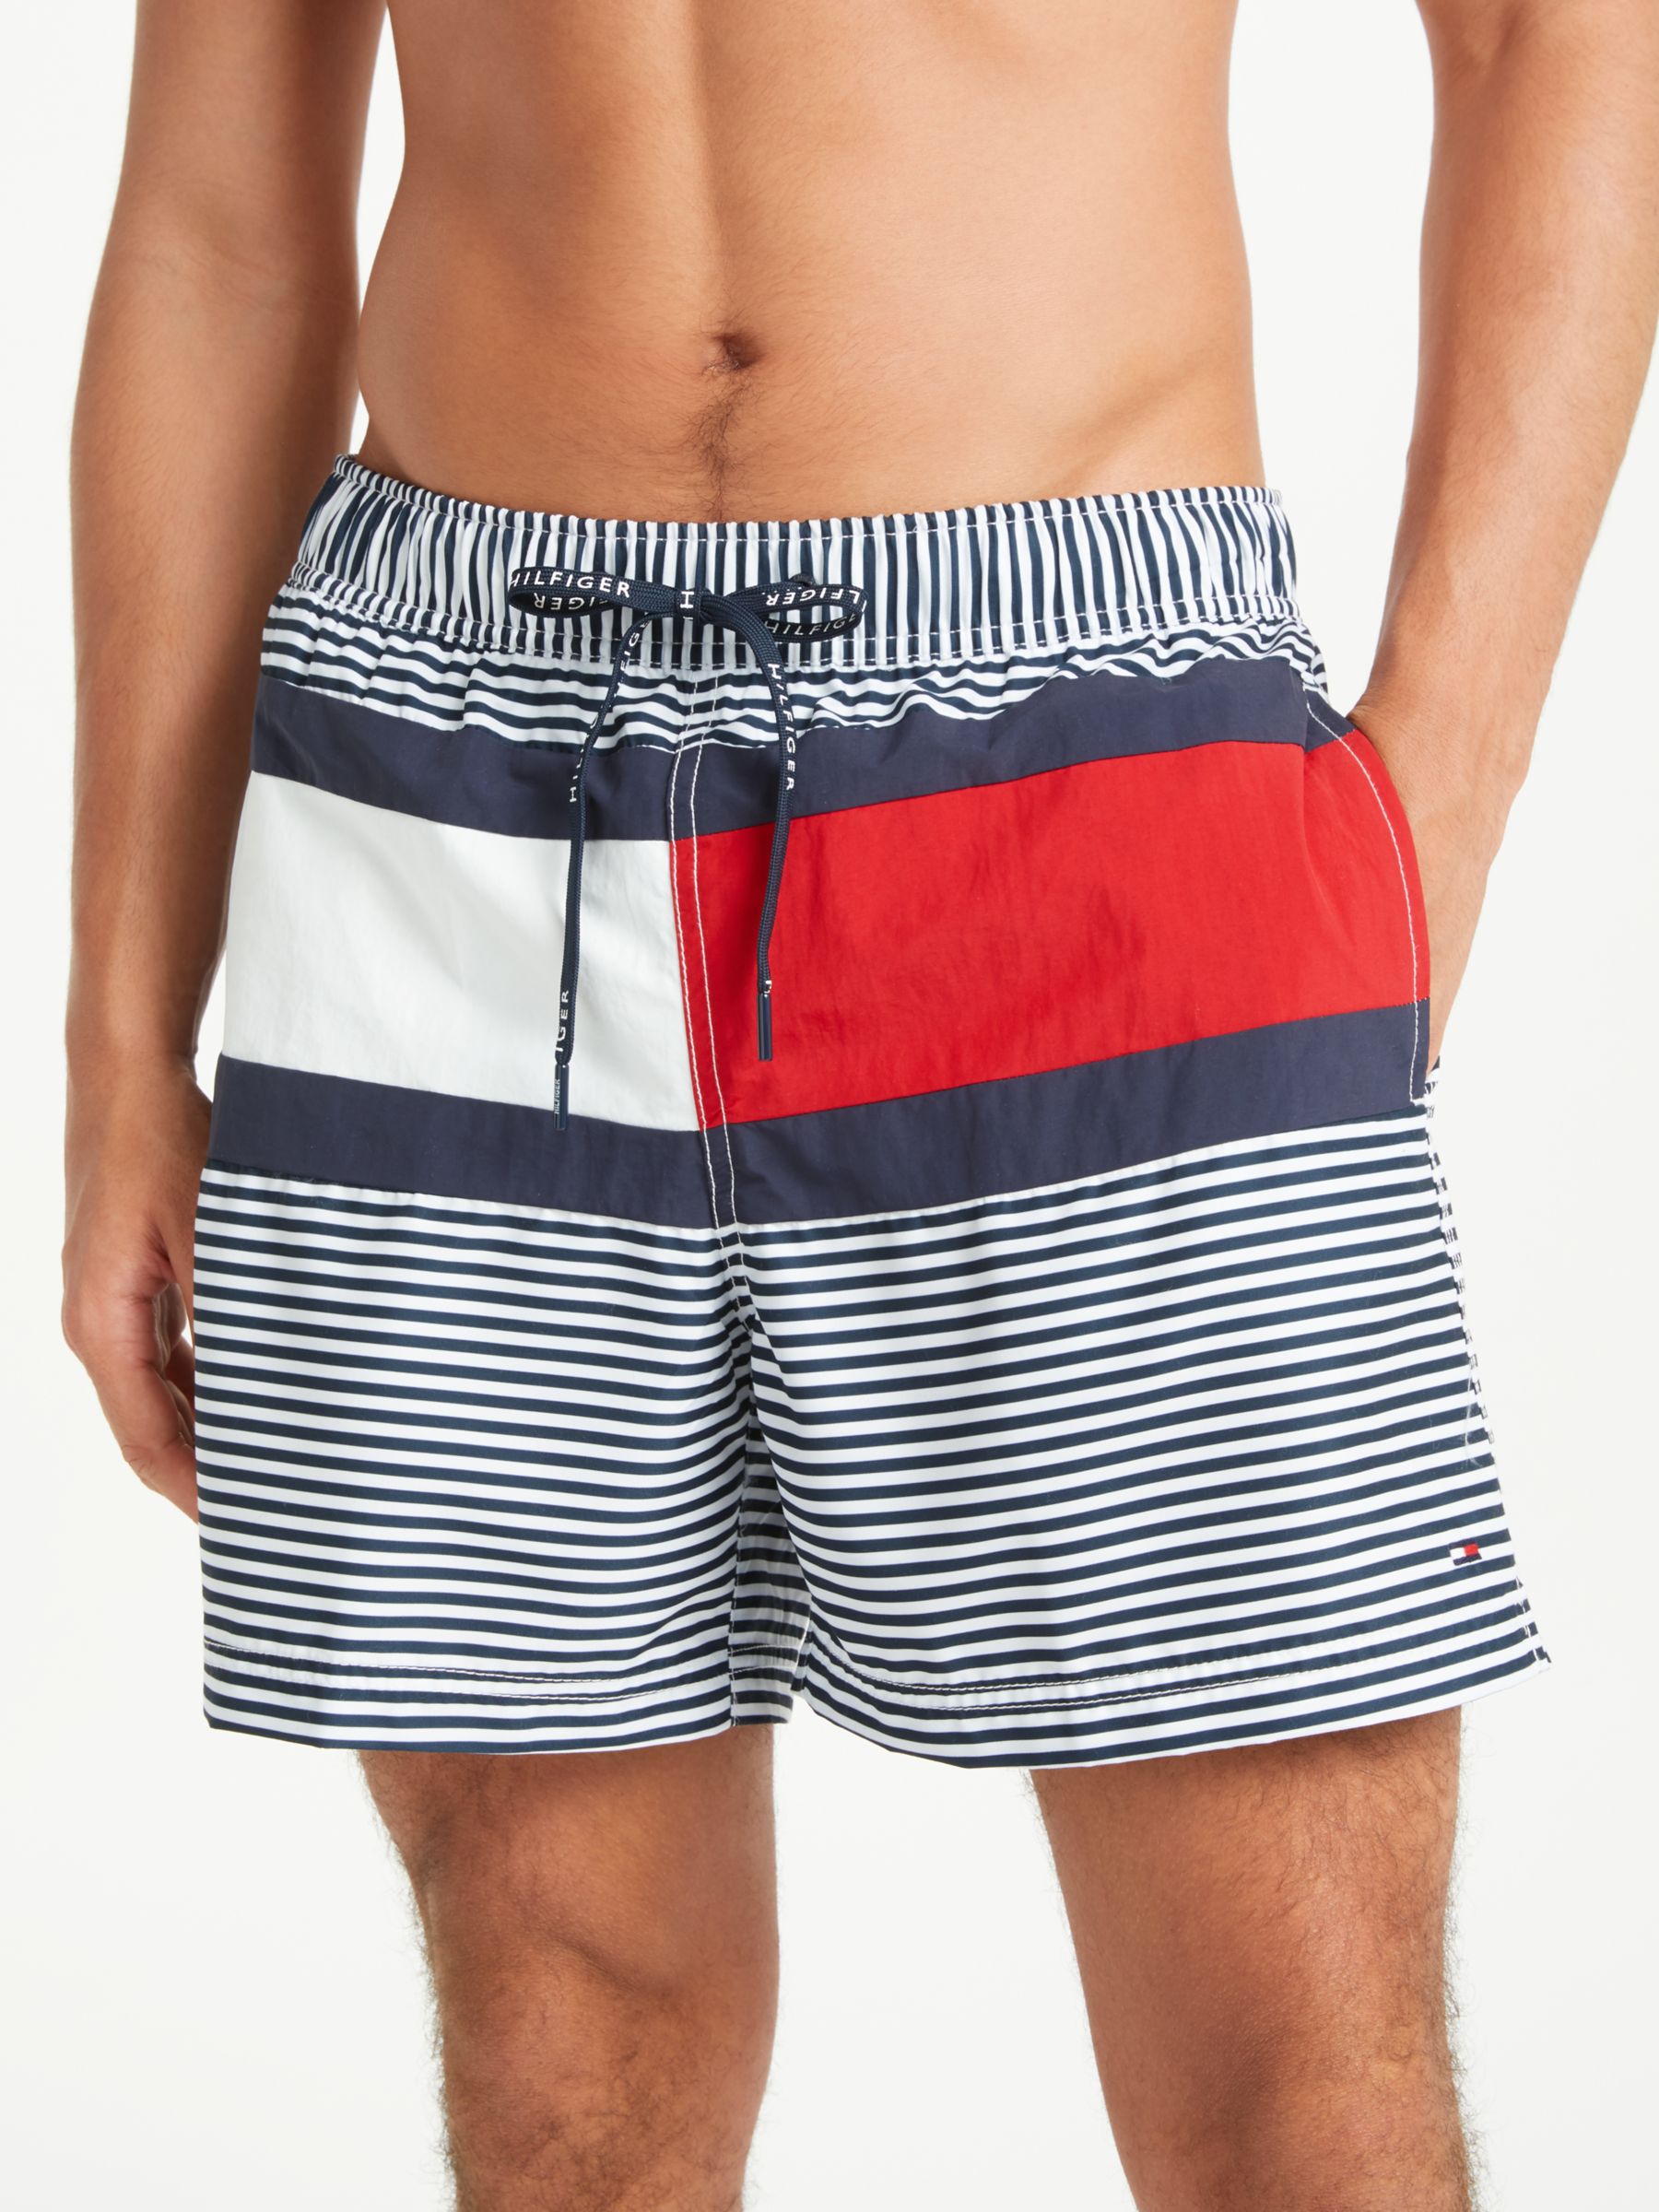 tommy hilfiger navy swim shorts